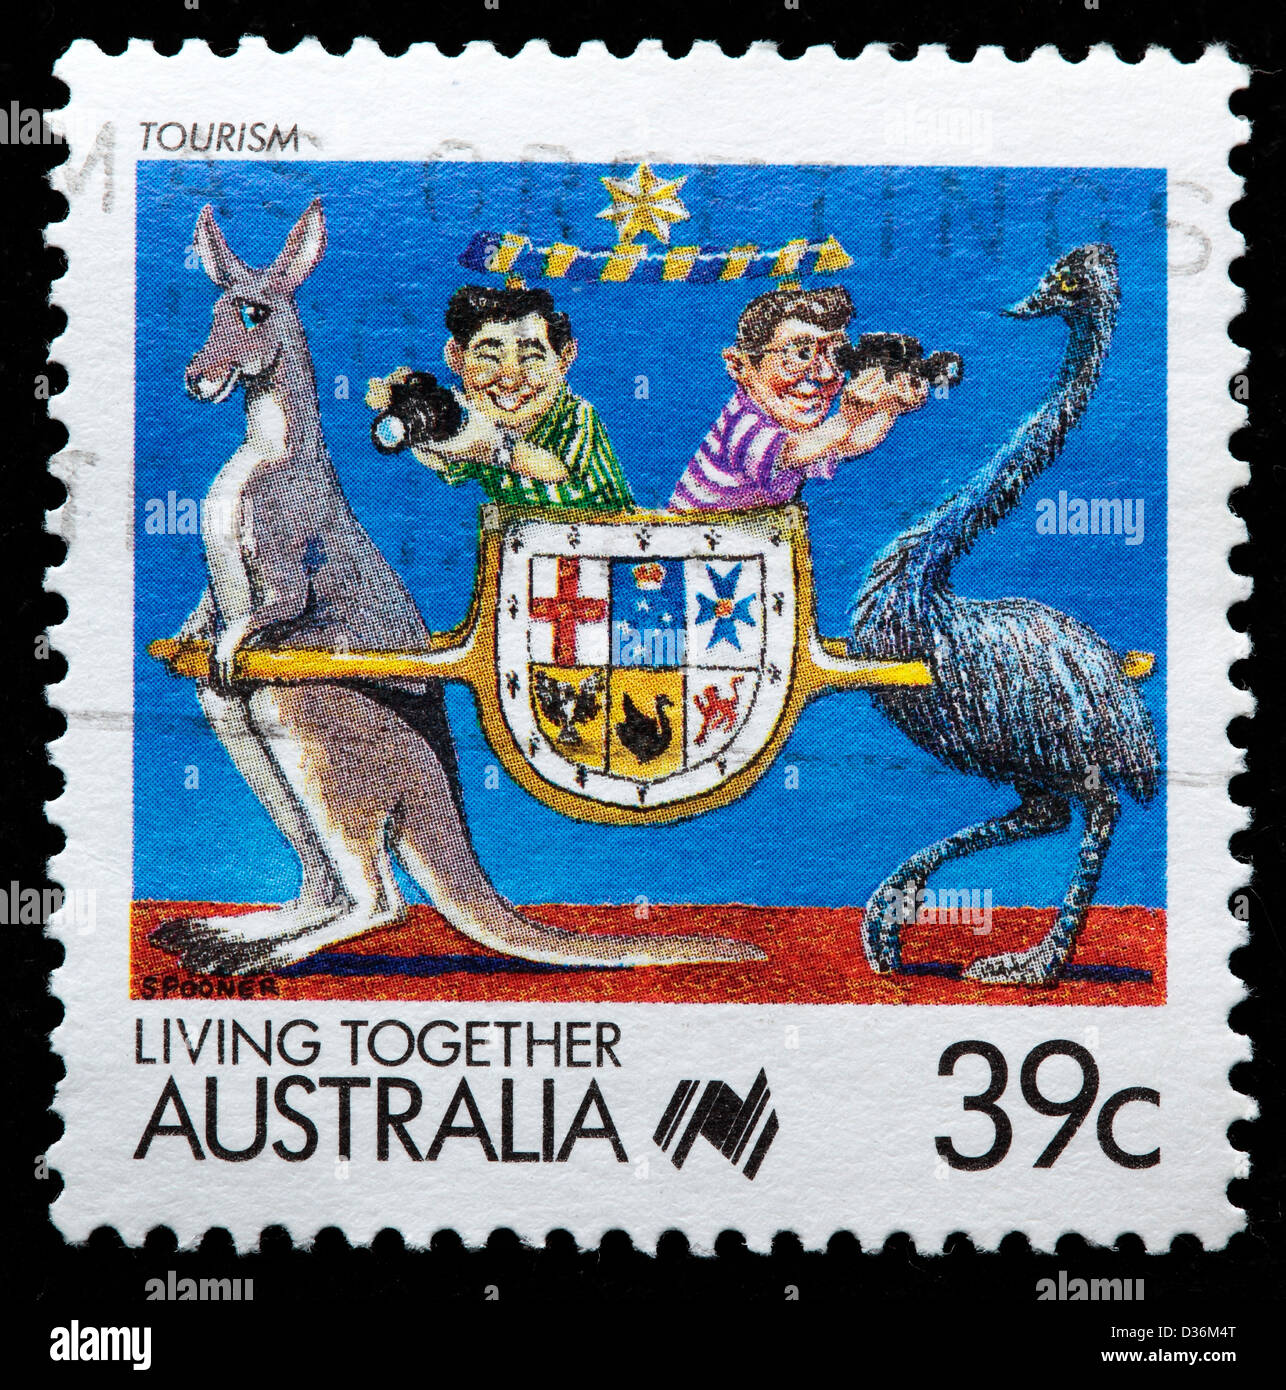 Le tourisme, vivant ensemble, timbre-poste, l'Australie, 1988 Banque D'Images